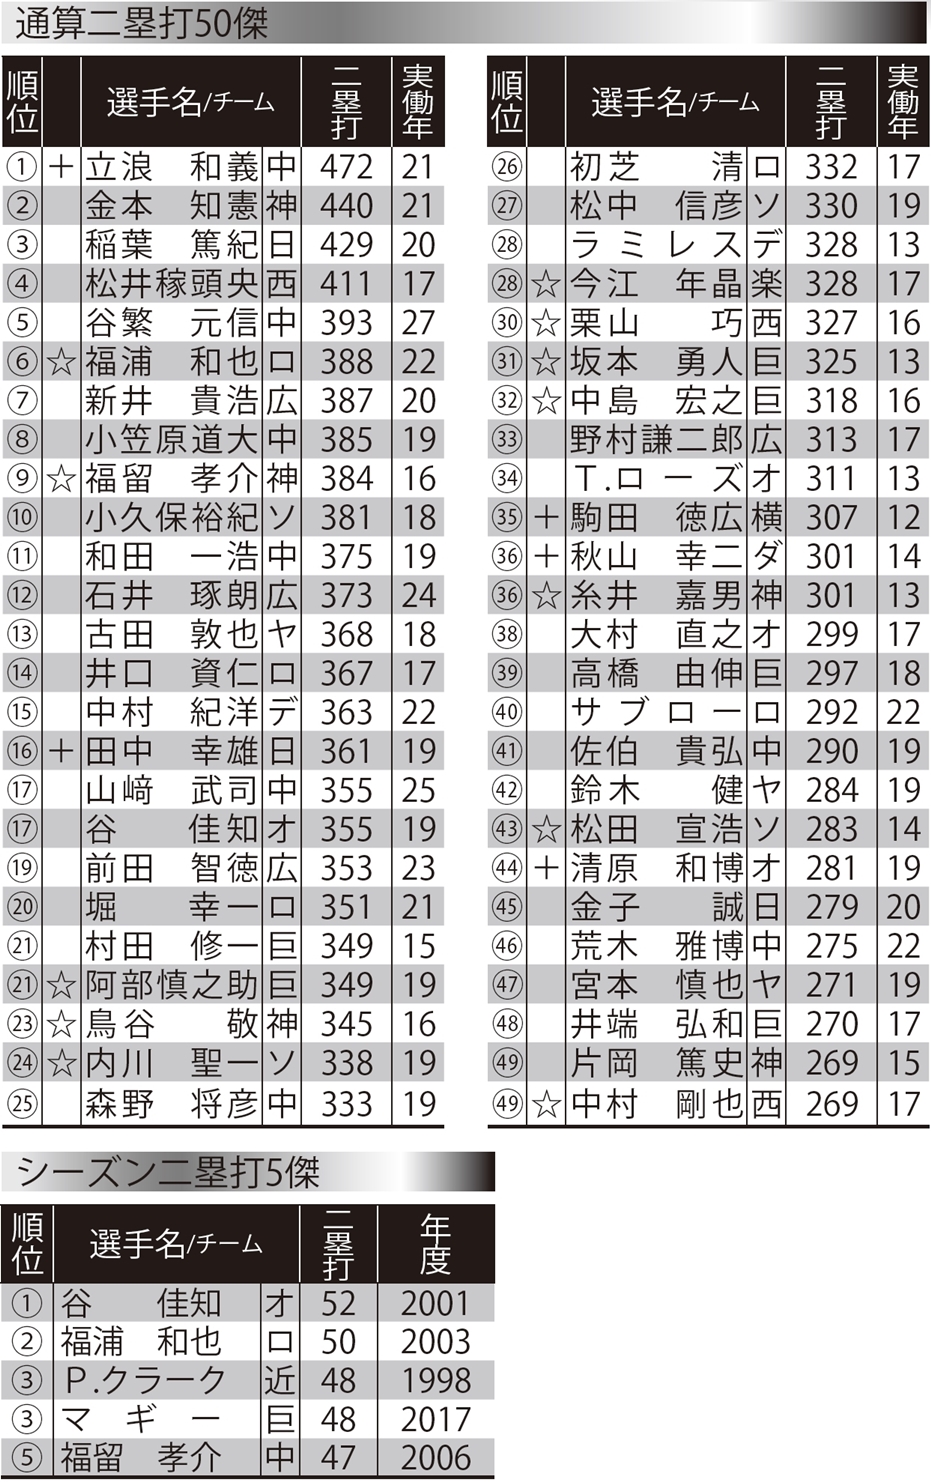 二塁打トップの立浪が日本記録を達成 三塁打は1本差で村松が1位 二塁打 三塁打平成ランキング 野球 週刊ベースボールonline